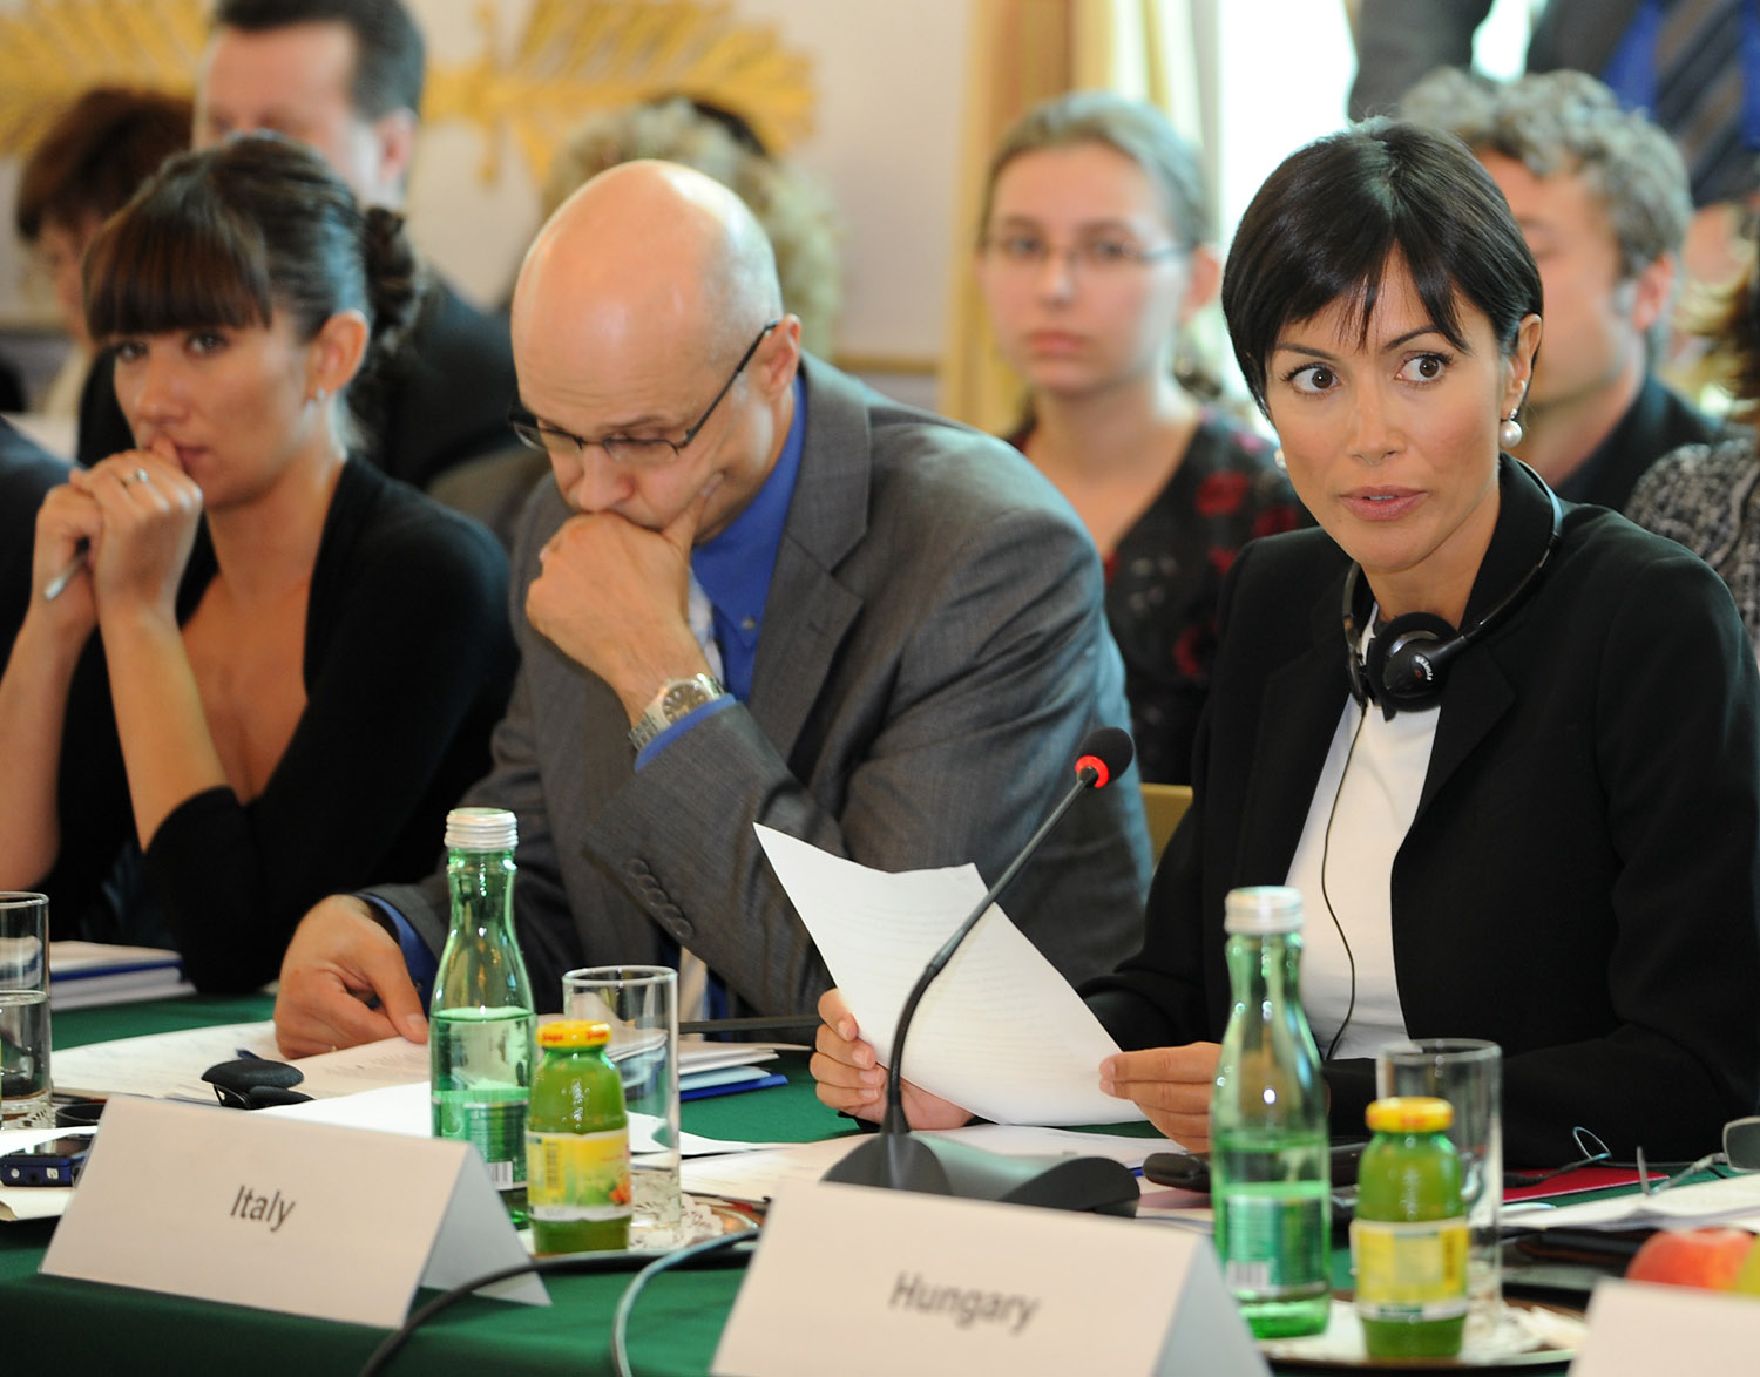 Am 20. September 2010 lud Frauenministerin Gabriele Heinisch-Hosek Regierungsvertreterinnen und -vertreter aller Nachbarstaaten Österreichs zu einem Roundtable-Gespräch zum Thema "Bekämpfung von Frauenhandel" ins Bundeskanzleramt.